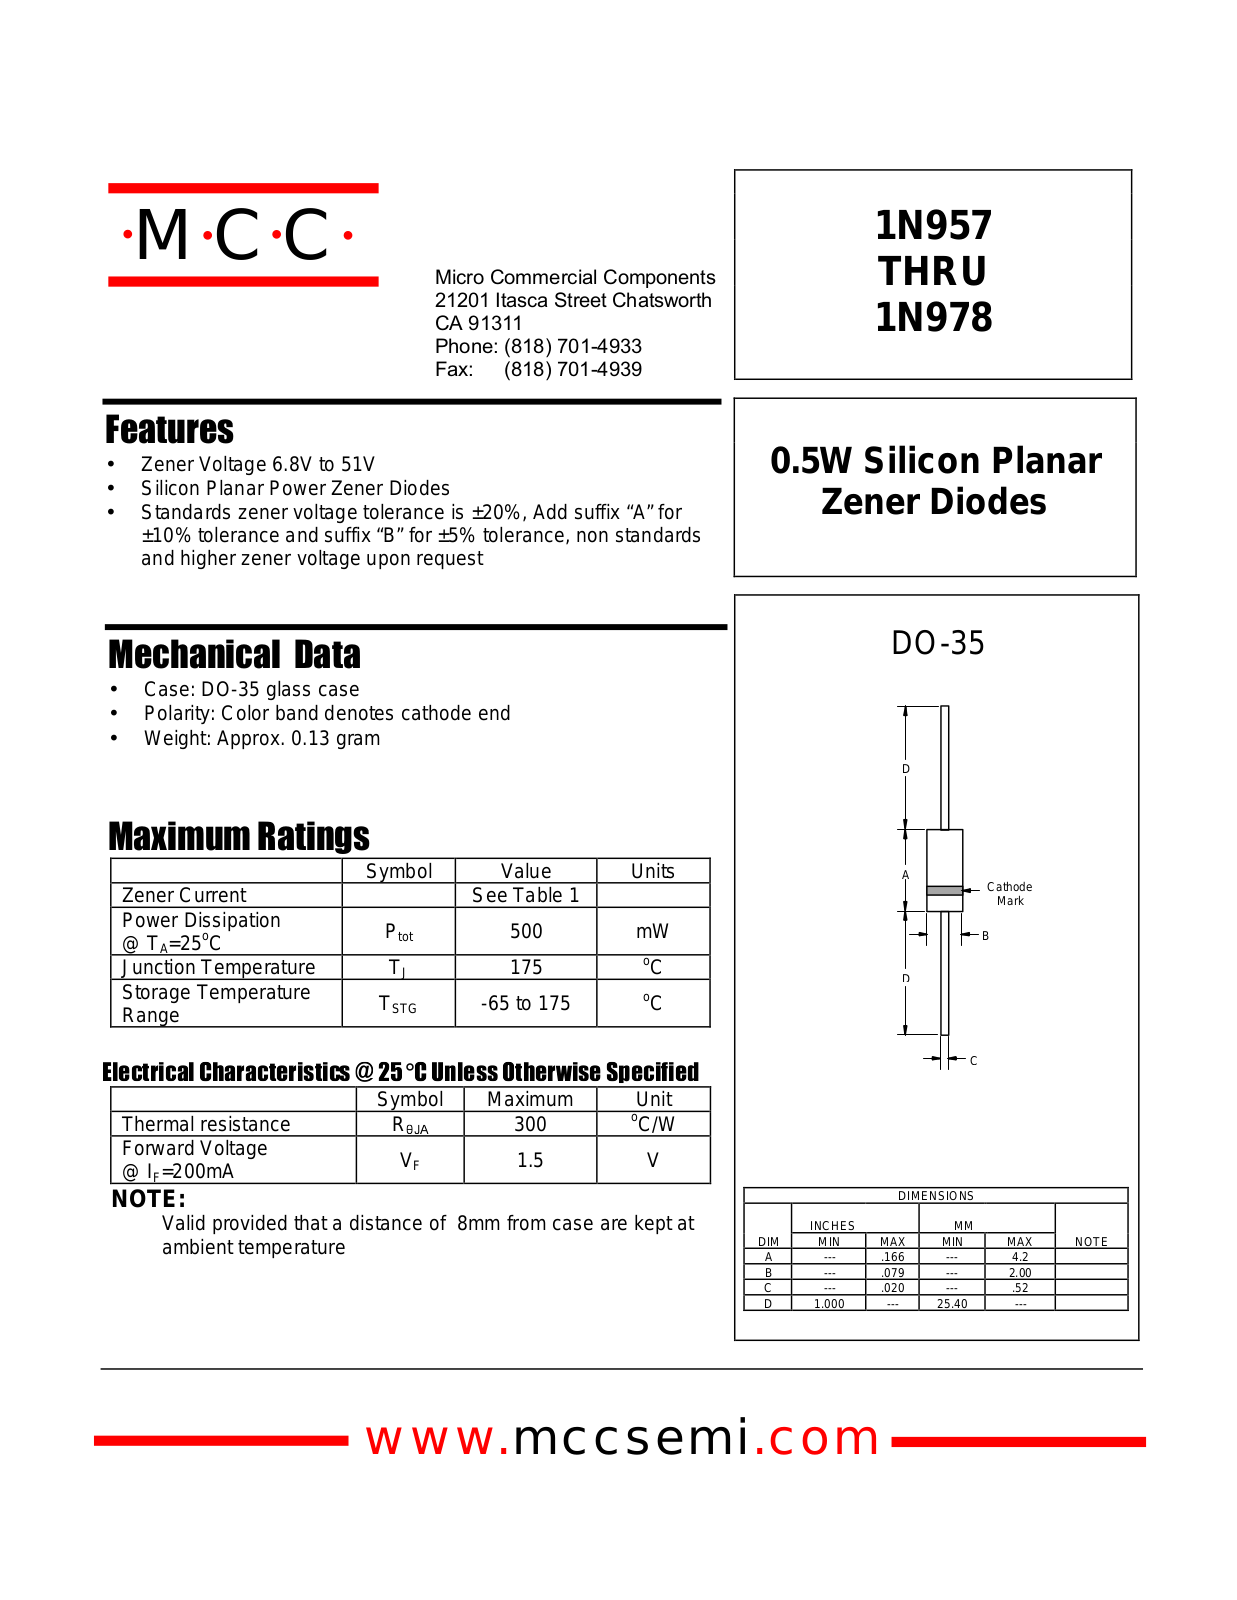 MCC 1N964, 1N963 Datasheet